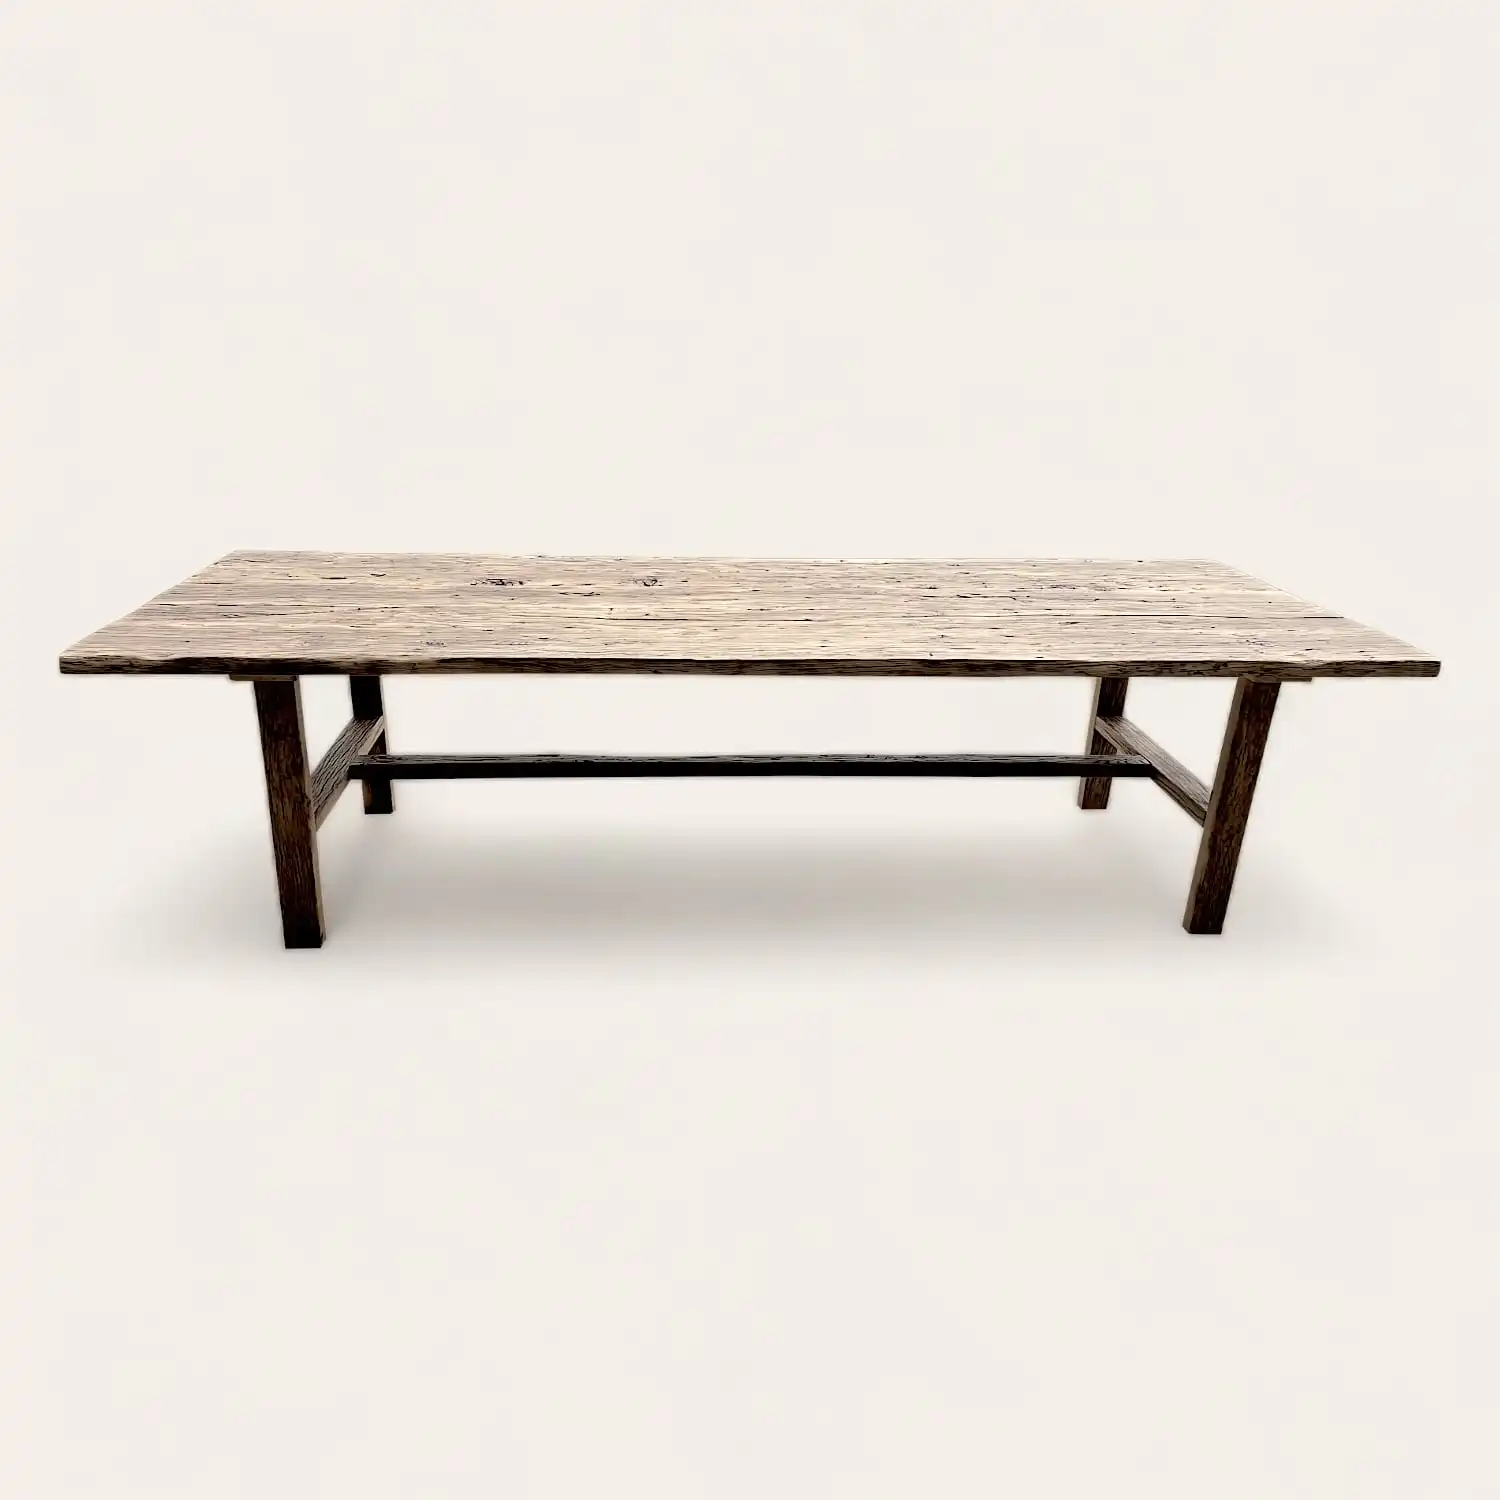  Une table en bois avec une structure en métal, parfaite pour une fermette rustique. 